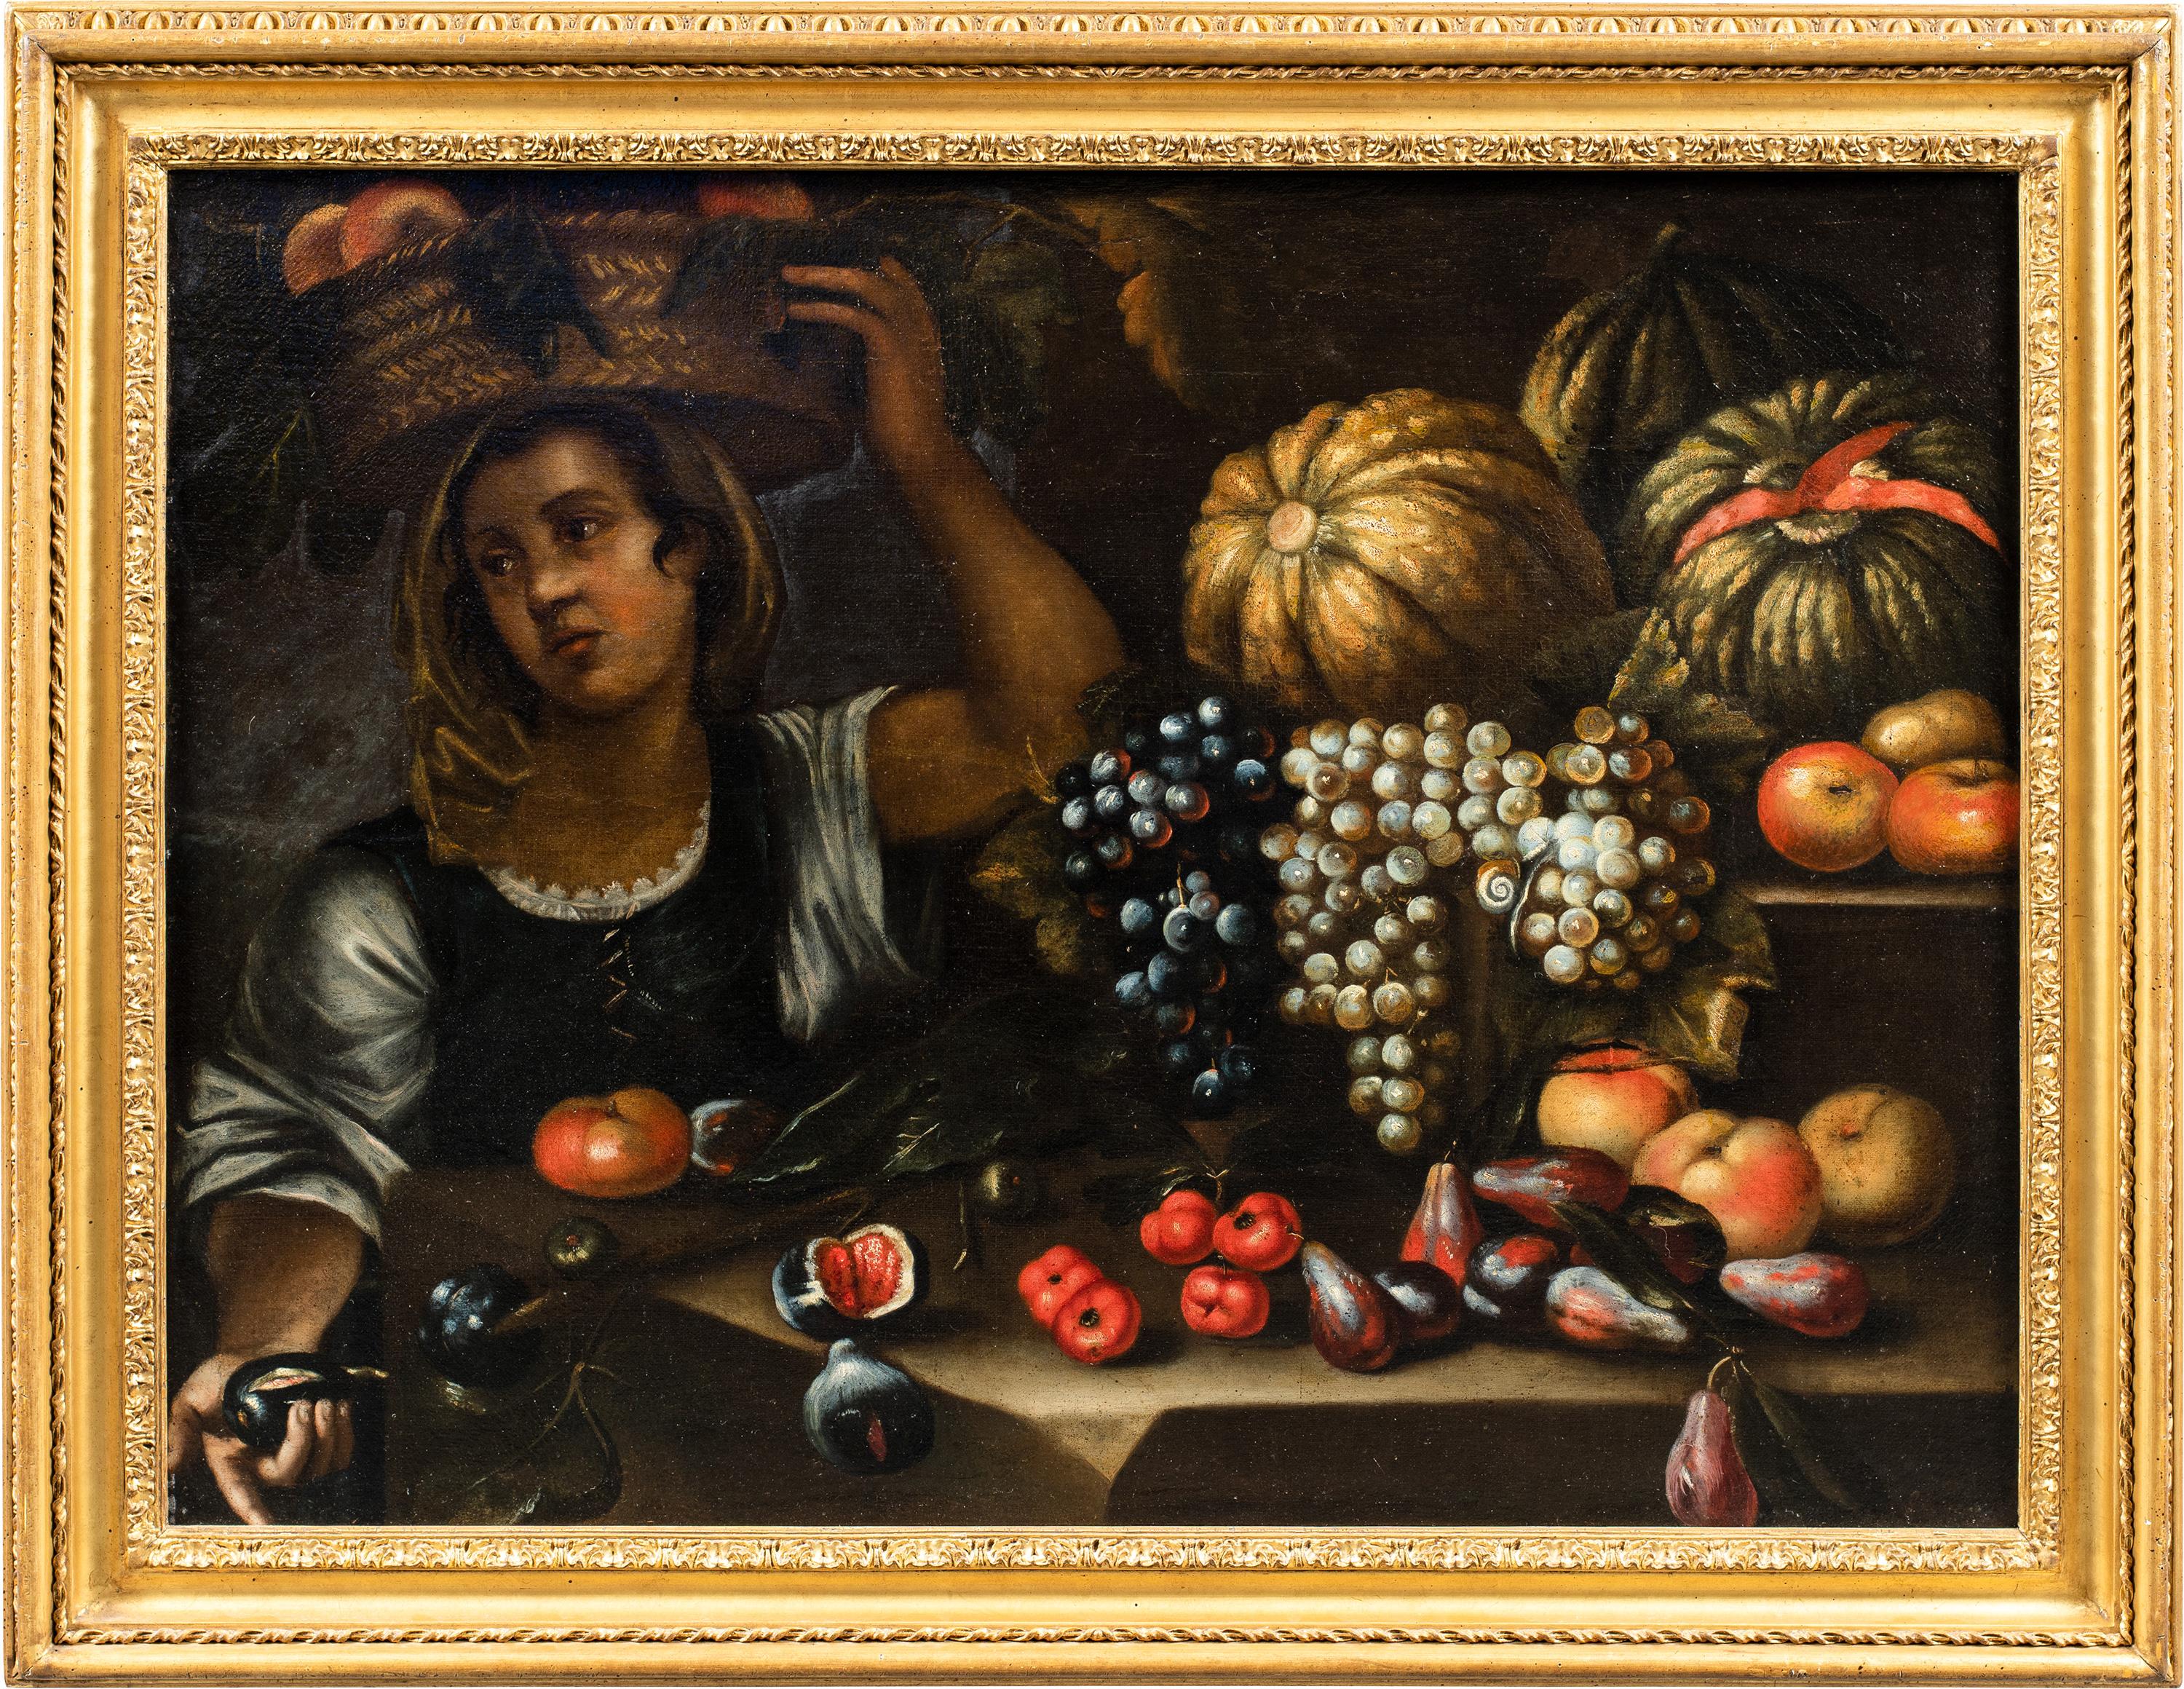 Francesco Annicini (Rom 1632 - nach 1679) - Stilleben mit Gemüsehändler.

73,5 x 98,5 cm ohne Rahmen, 90 x 115 cm mit Rahmen.

Antikes Ölgemälde auf Leinwand, in einem geschnitzten und vergoldeten Holzrahmen.

- Das Gemälde kann aufgrund von